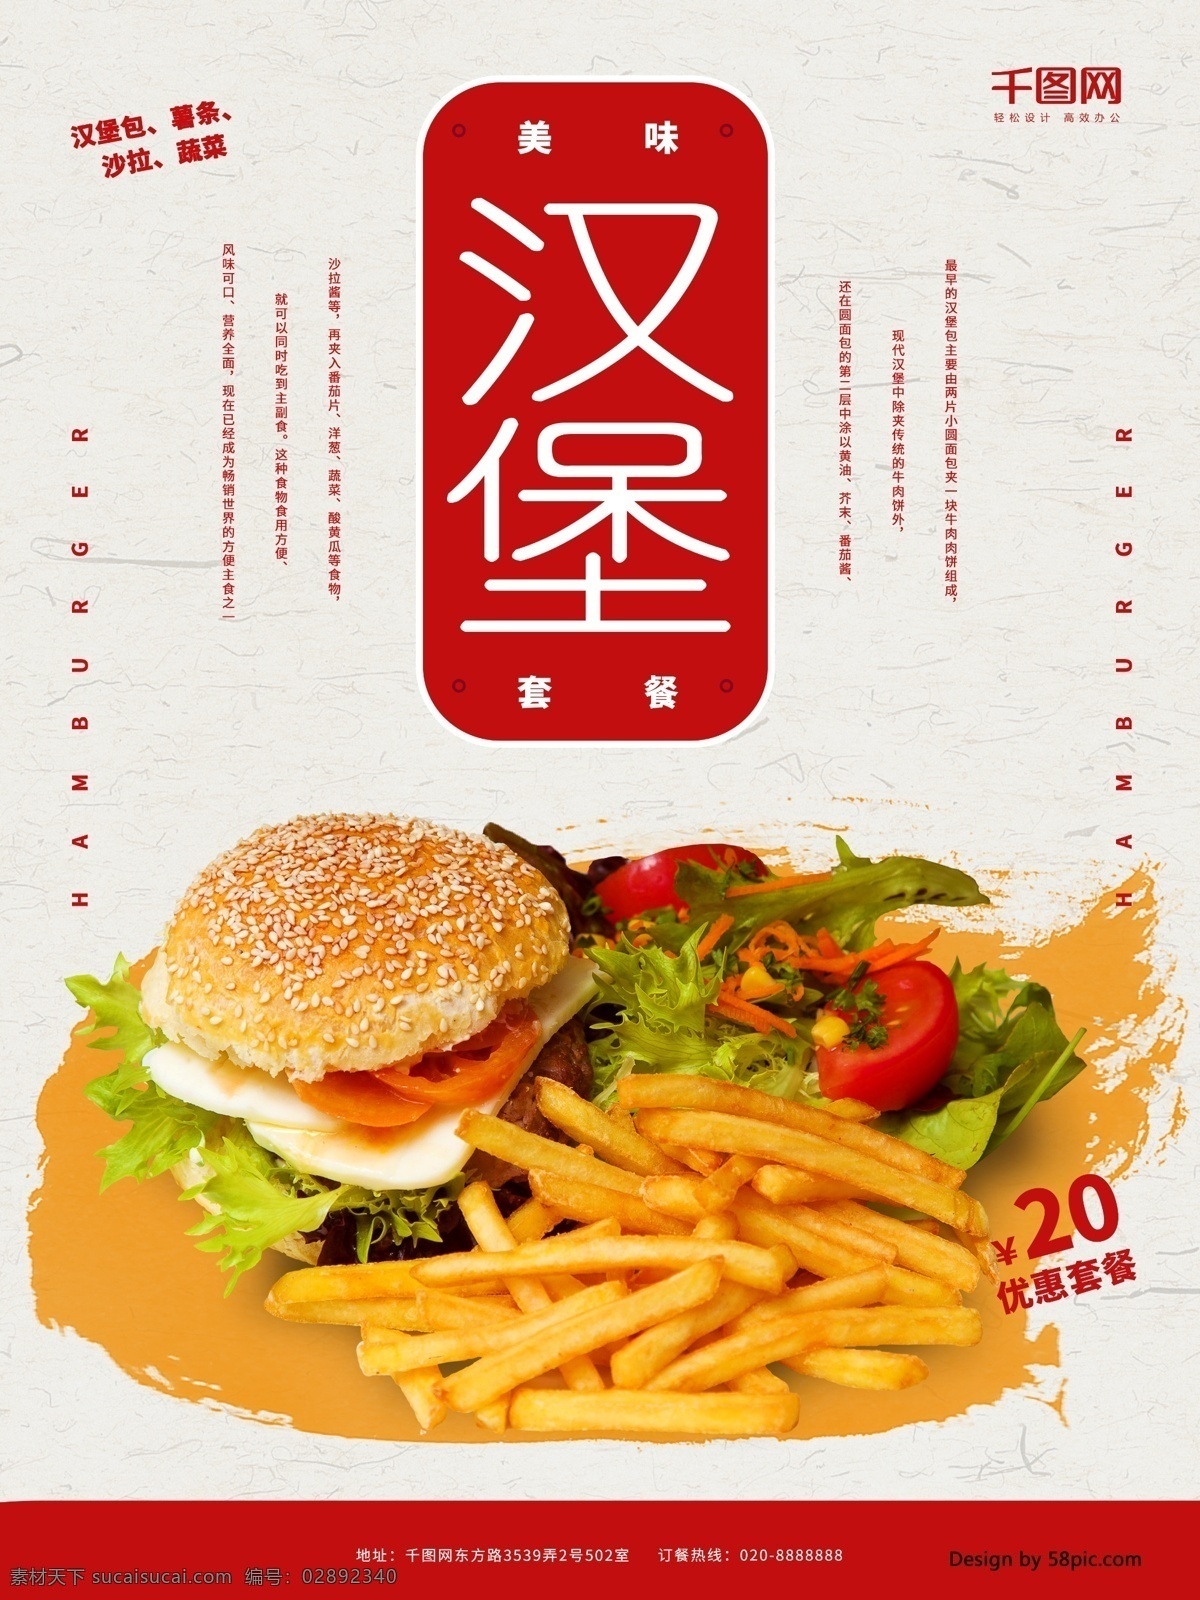 美味 汉堡 套餐 创意 简约 美食 海报 美食海报 蔬菜 薯条 汉堡薯条 汉堡套餐 沙拉 优惠套餐